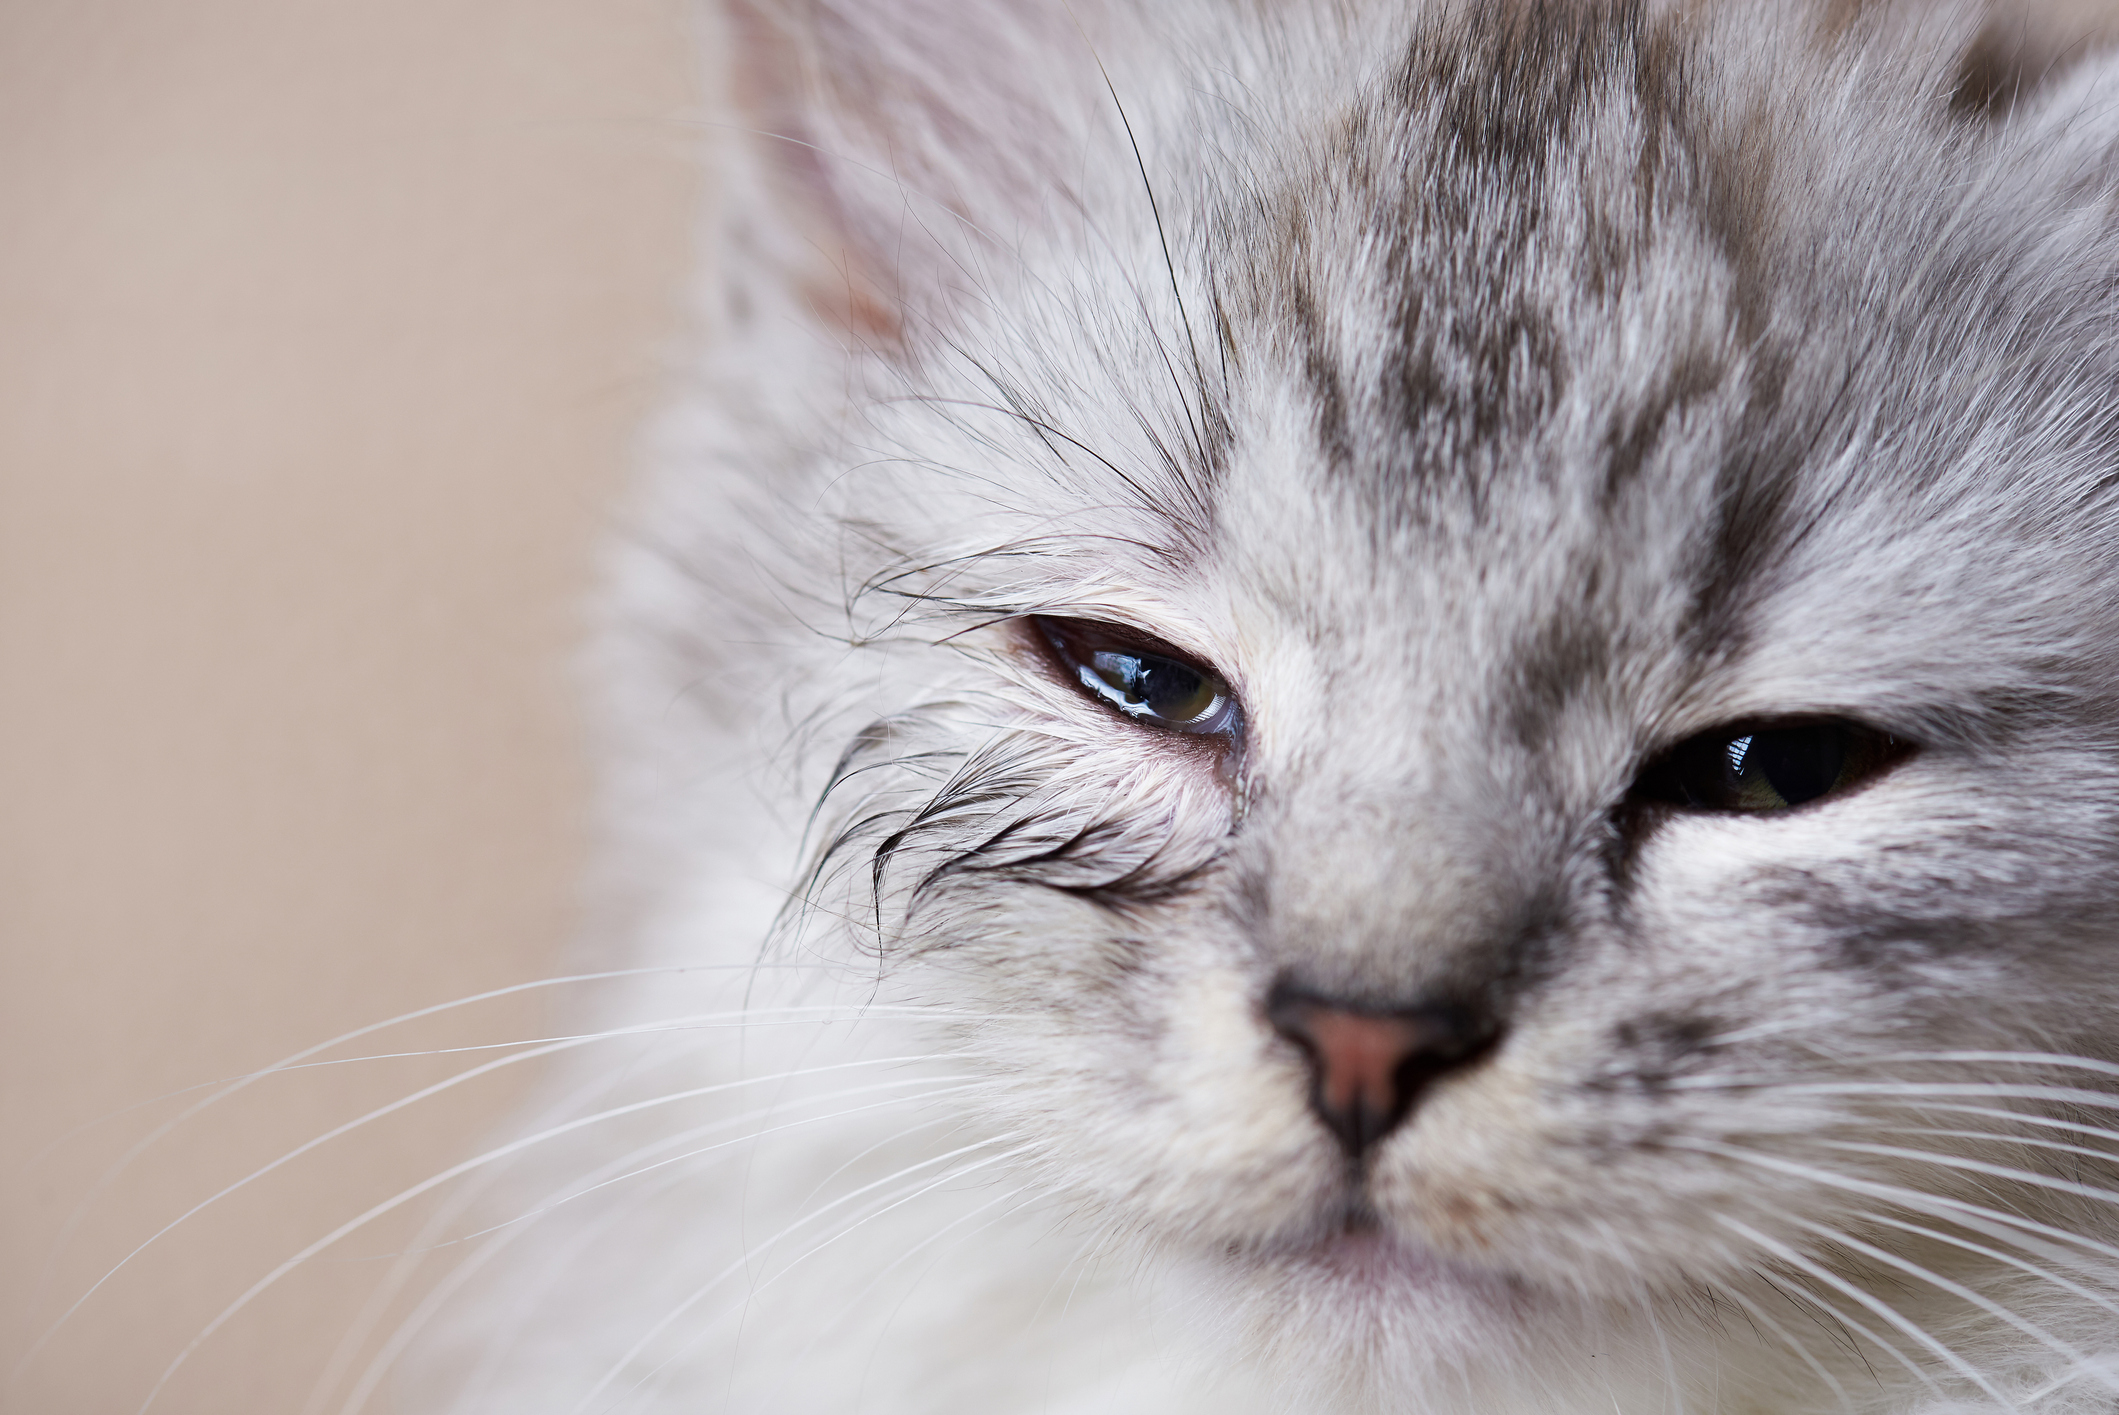 Cute grey tabby kitten has a leaky eye